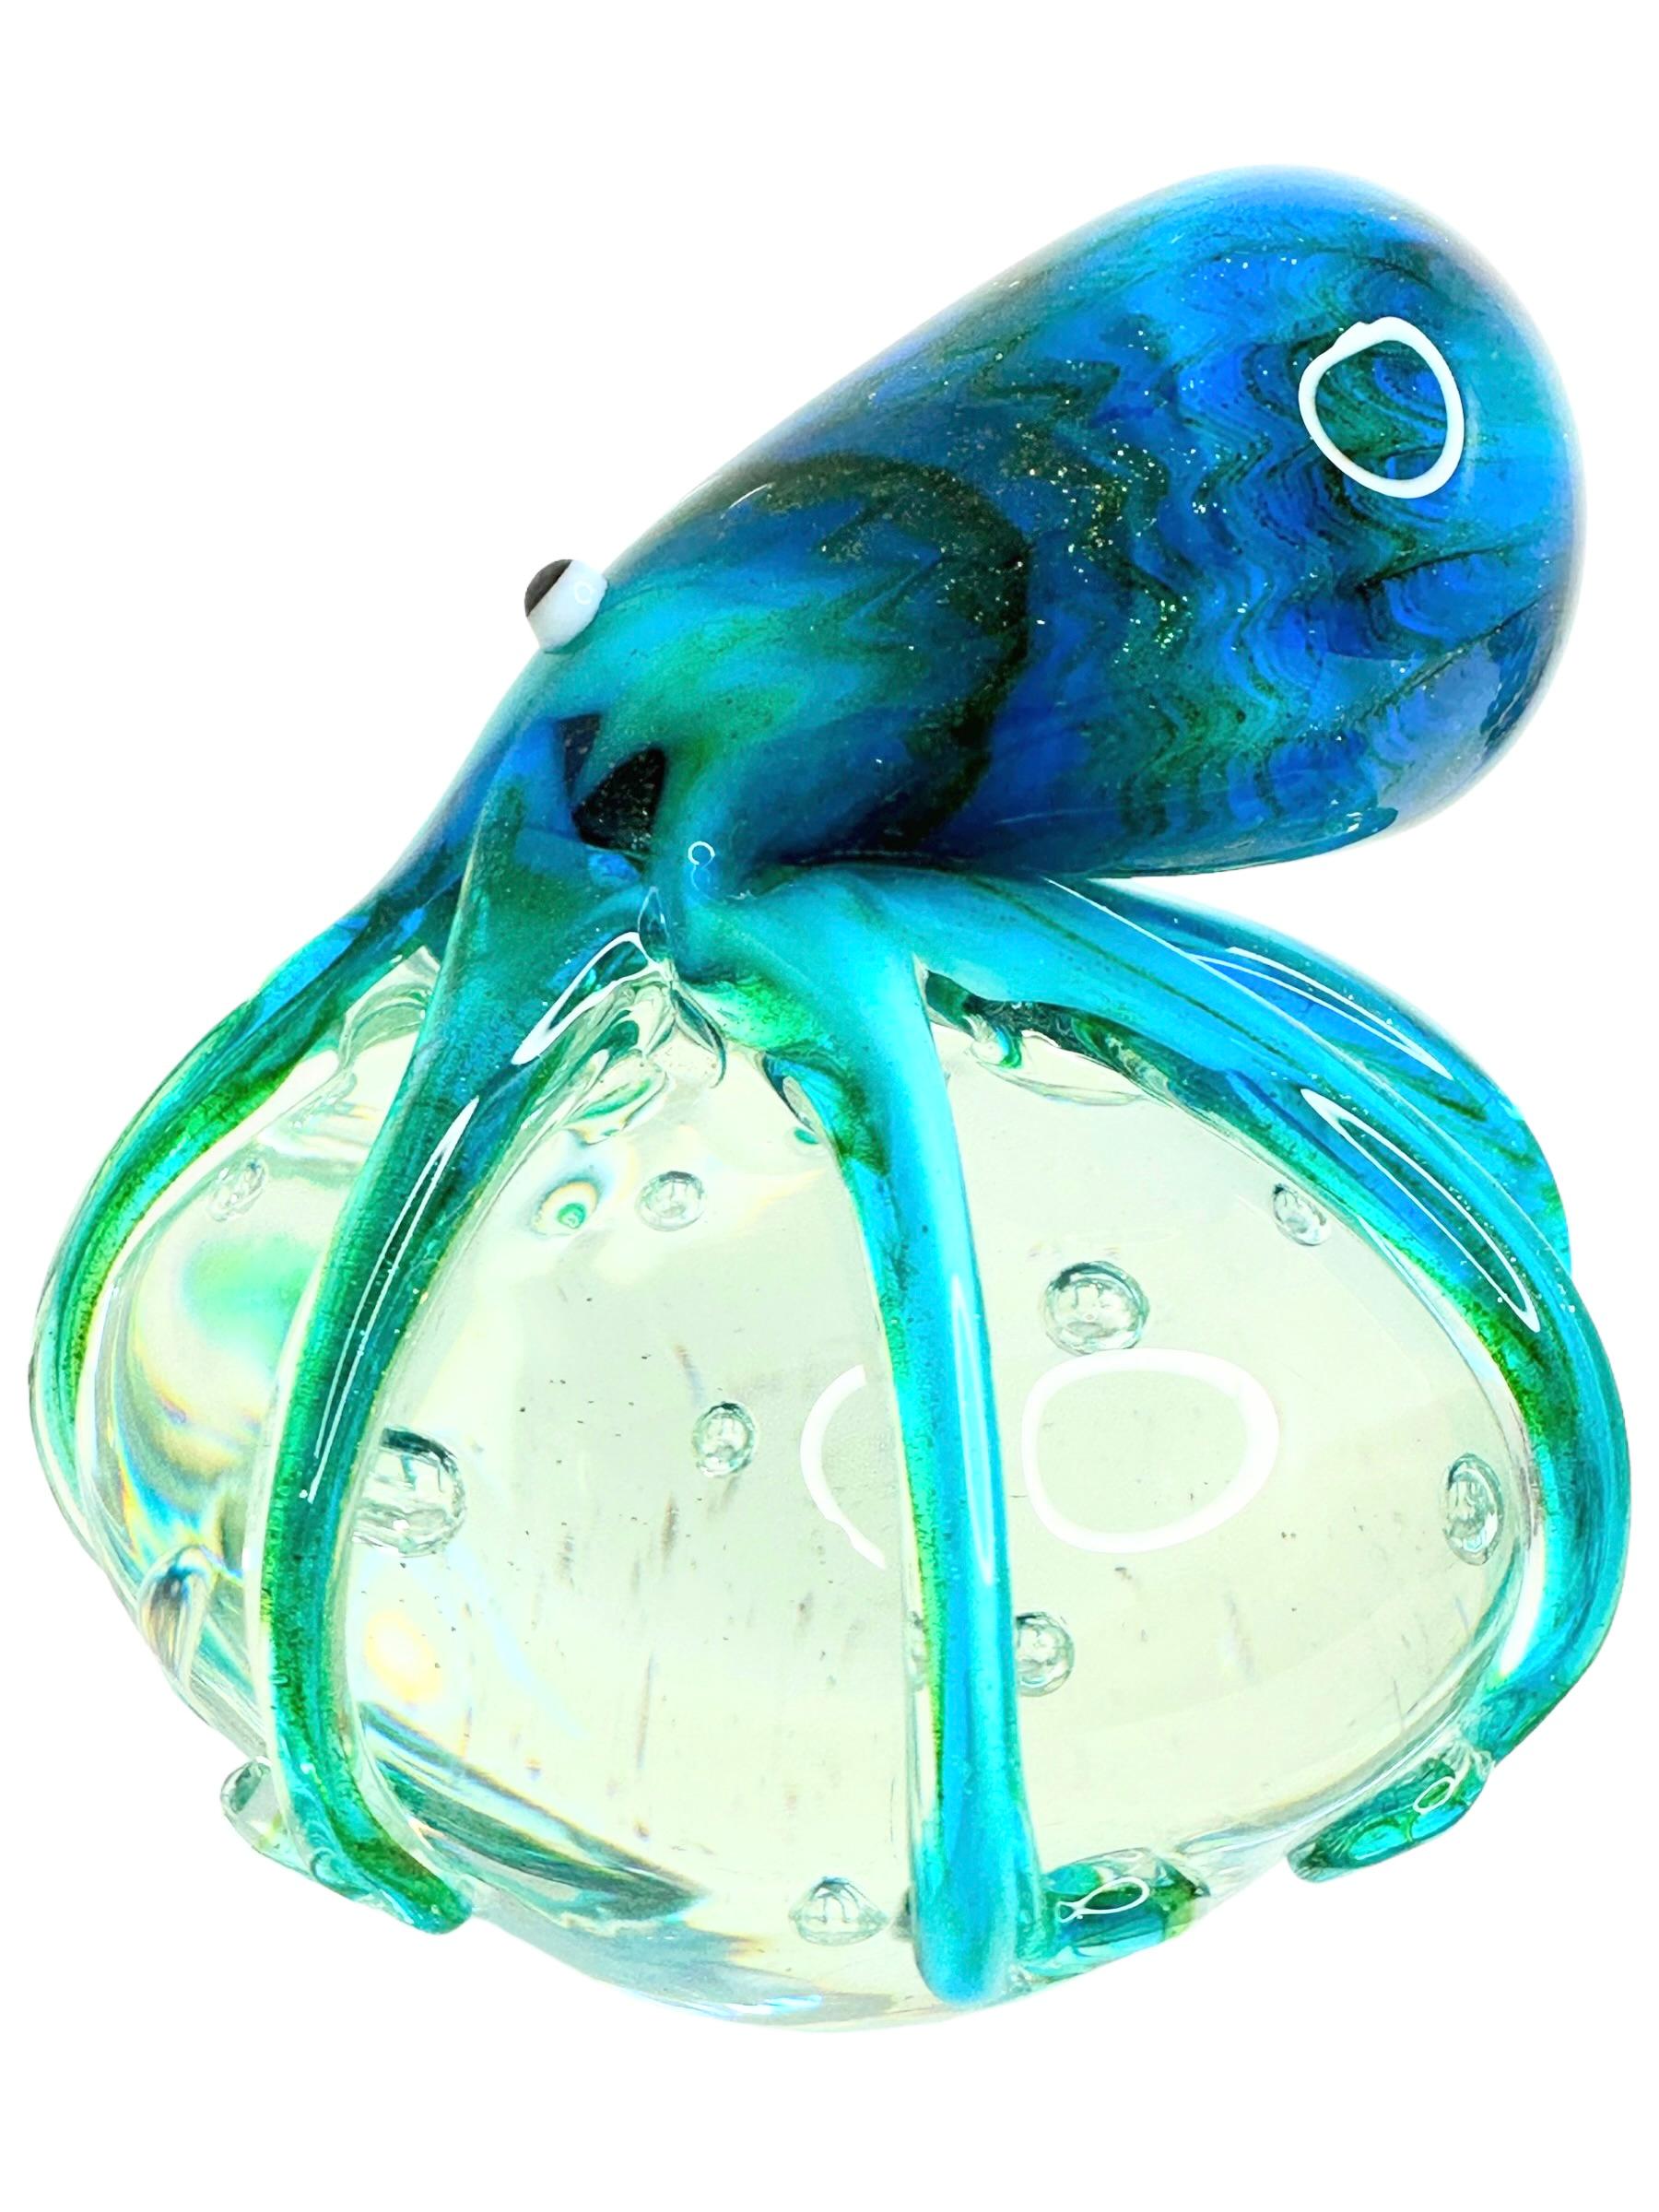 Magnifique presse-papier en verre d'aquarium italien soufflé à la bouche par Murano. Montrant une pieuvre géante, sur une bulle de verre flottant sur des bulles contrôlées. Les couleurs sont différentes nuances de bleu, de turquoise, de blanc, de